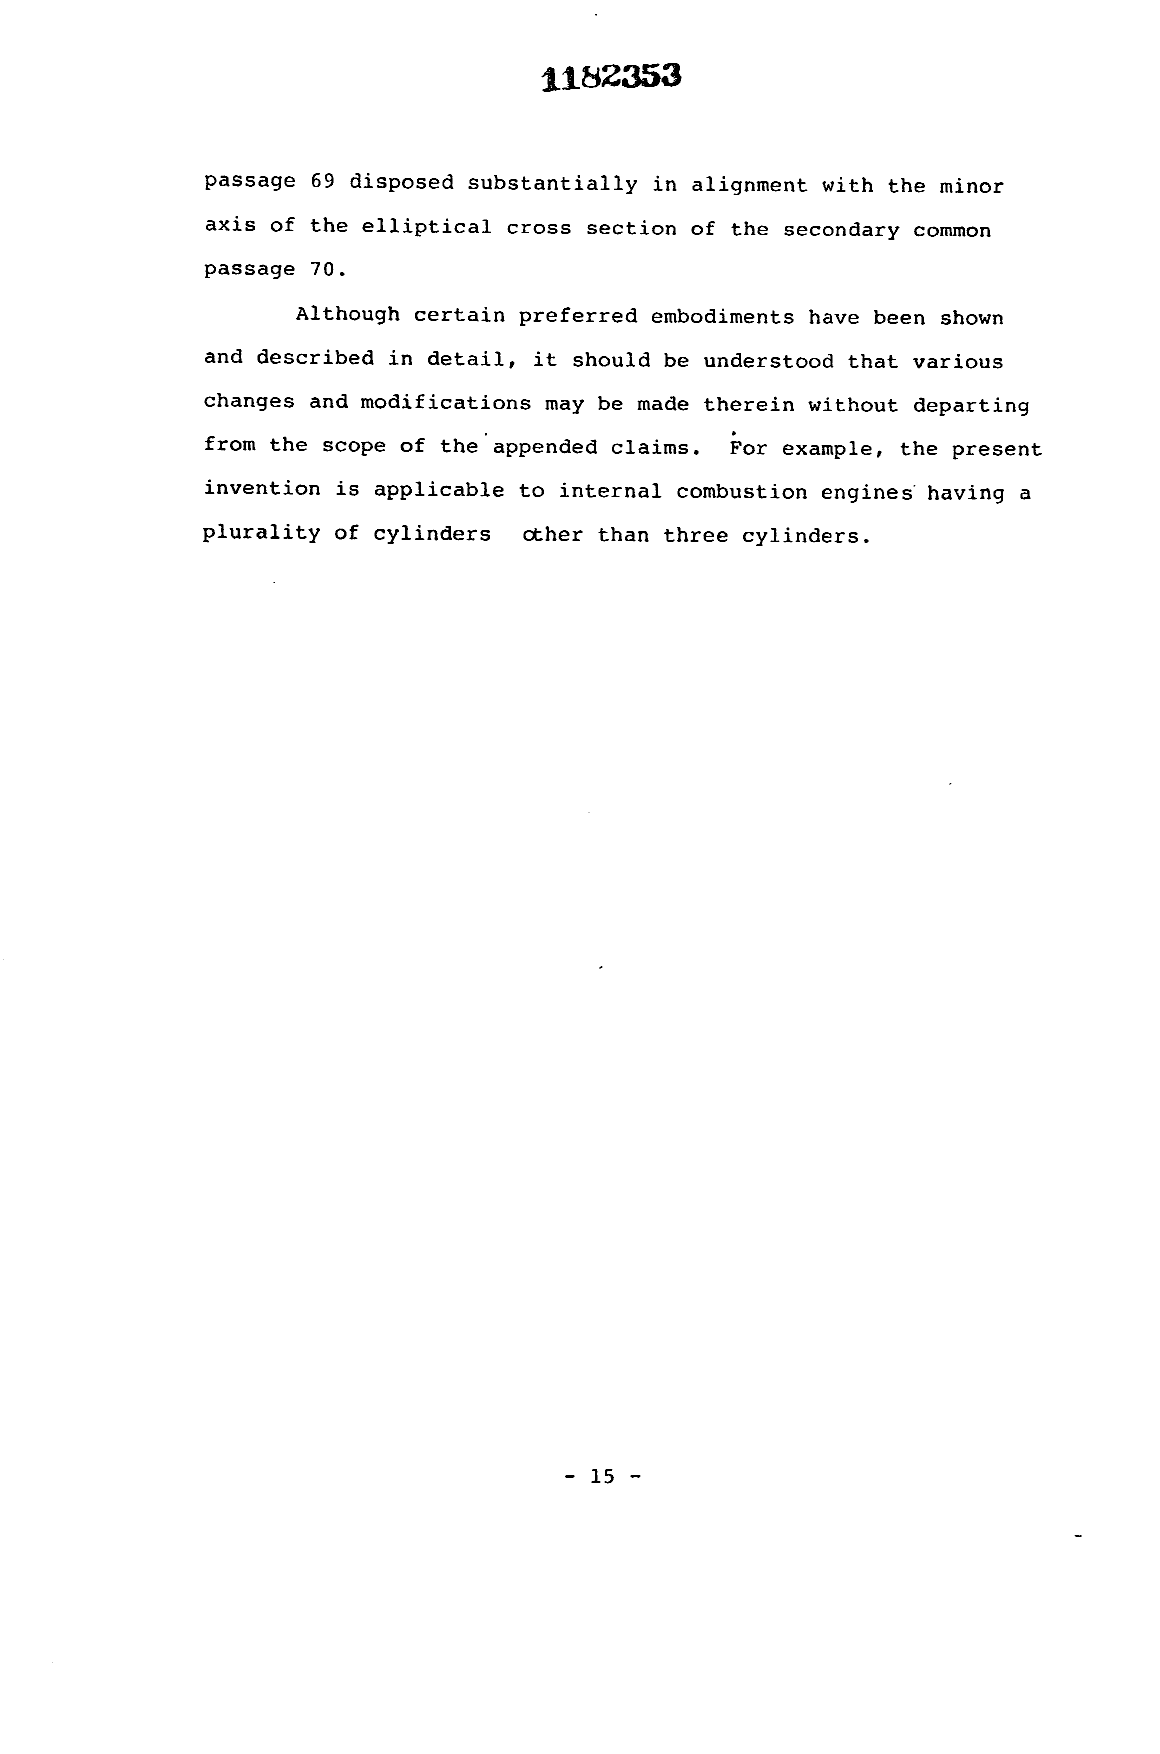 Canadian Patent Document 1182353. Description 19931030. Image 15 of 15